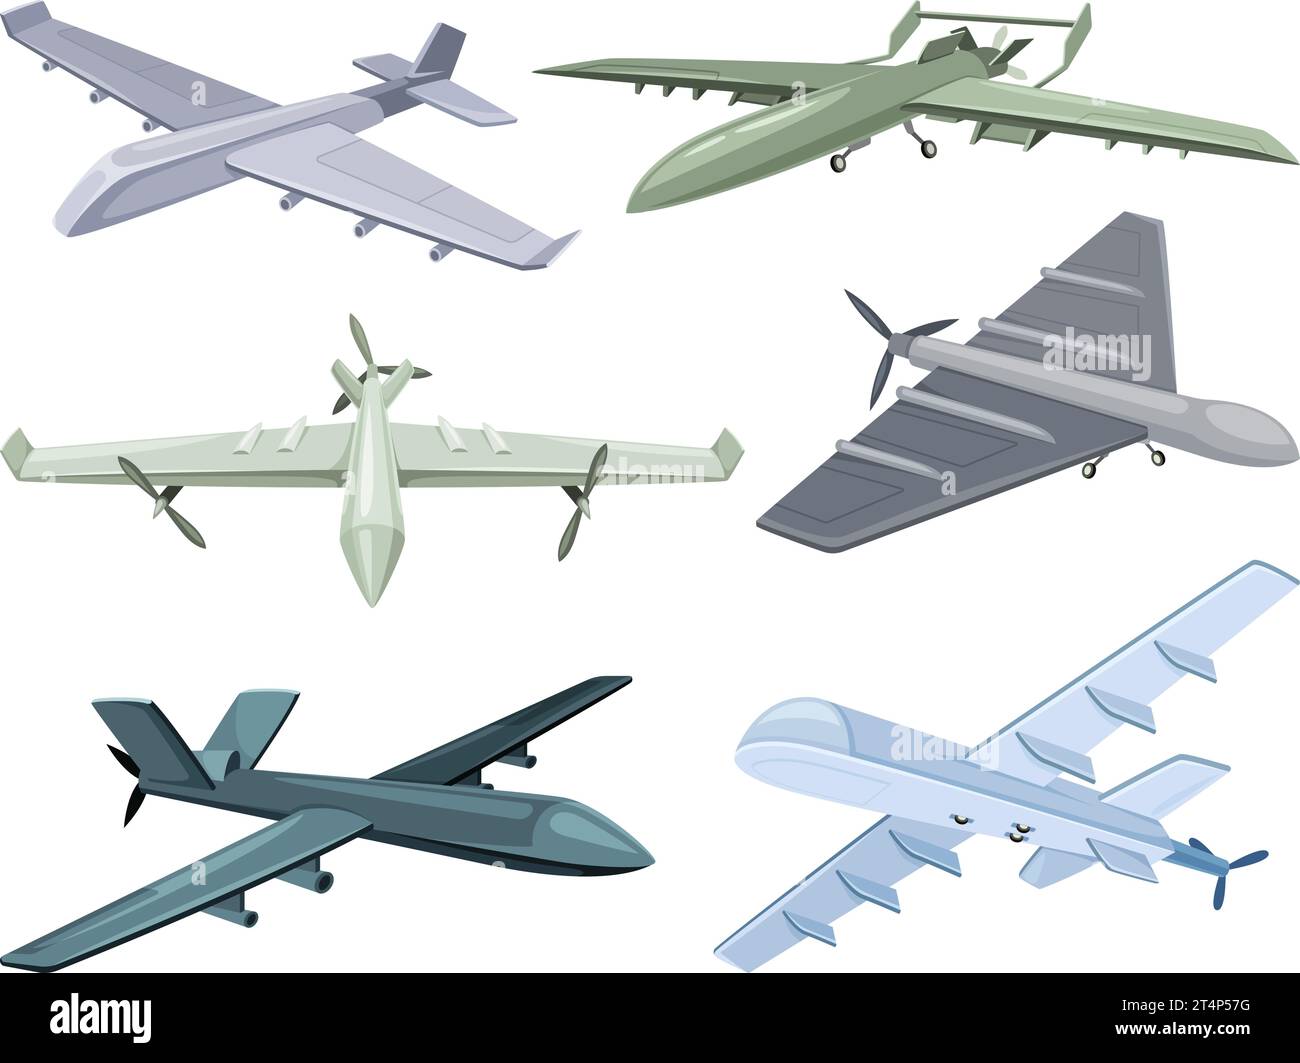 Les différences entre un drone et un avion télécommandé